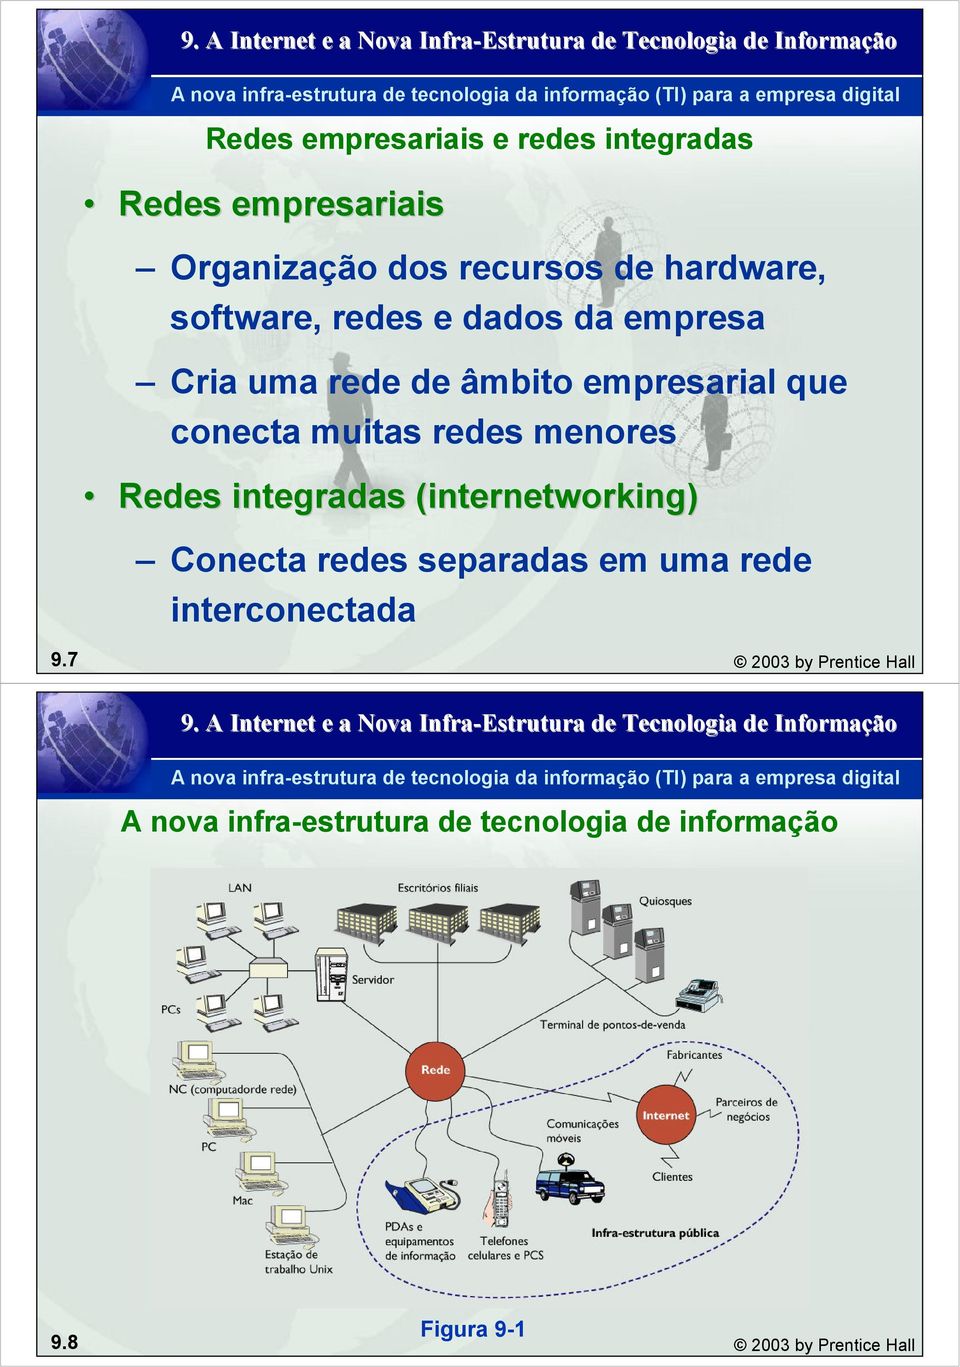 Redes integradas (internetworking( internetworking) Conecta redes separadas em uma rede interconectada